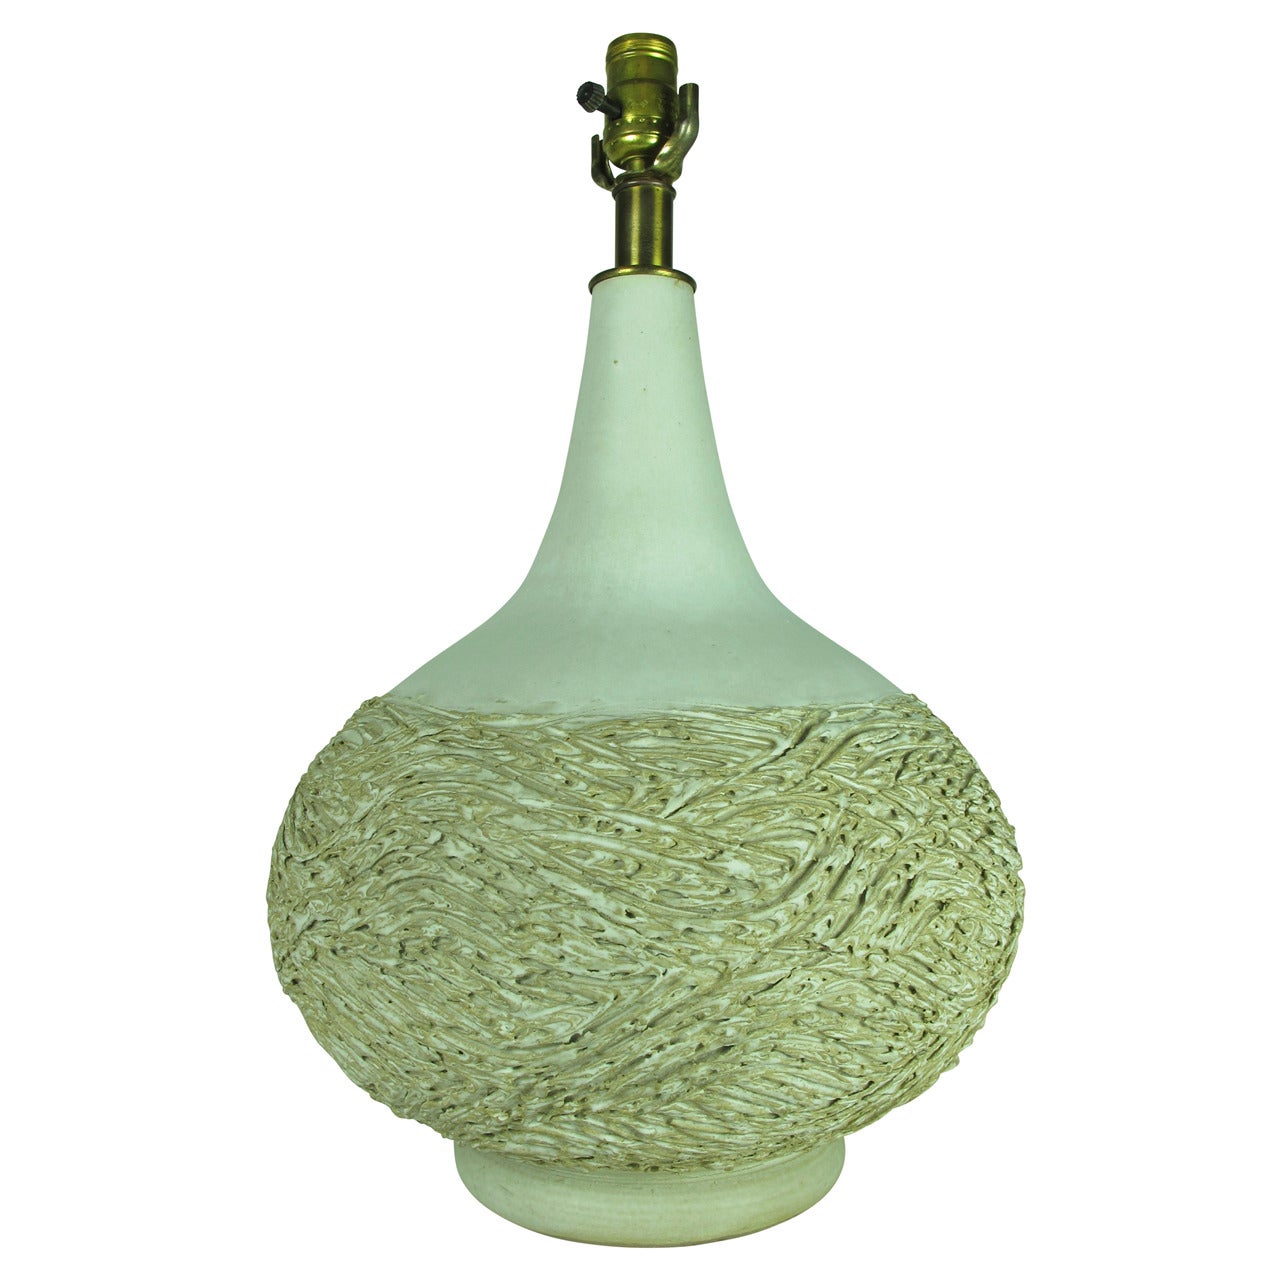 White Gourd Shape Design Technics Ceramic Table Lamp by Lee Rosen